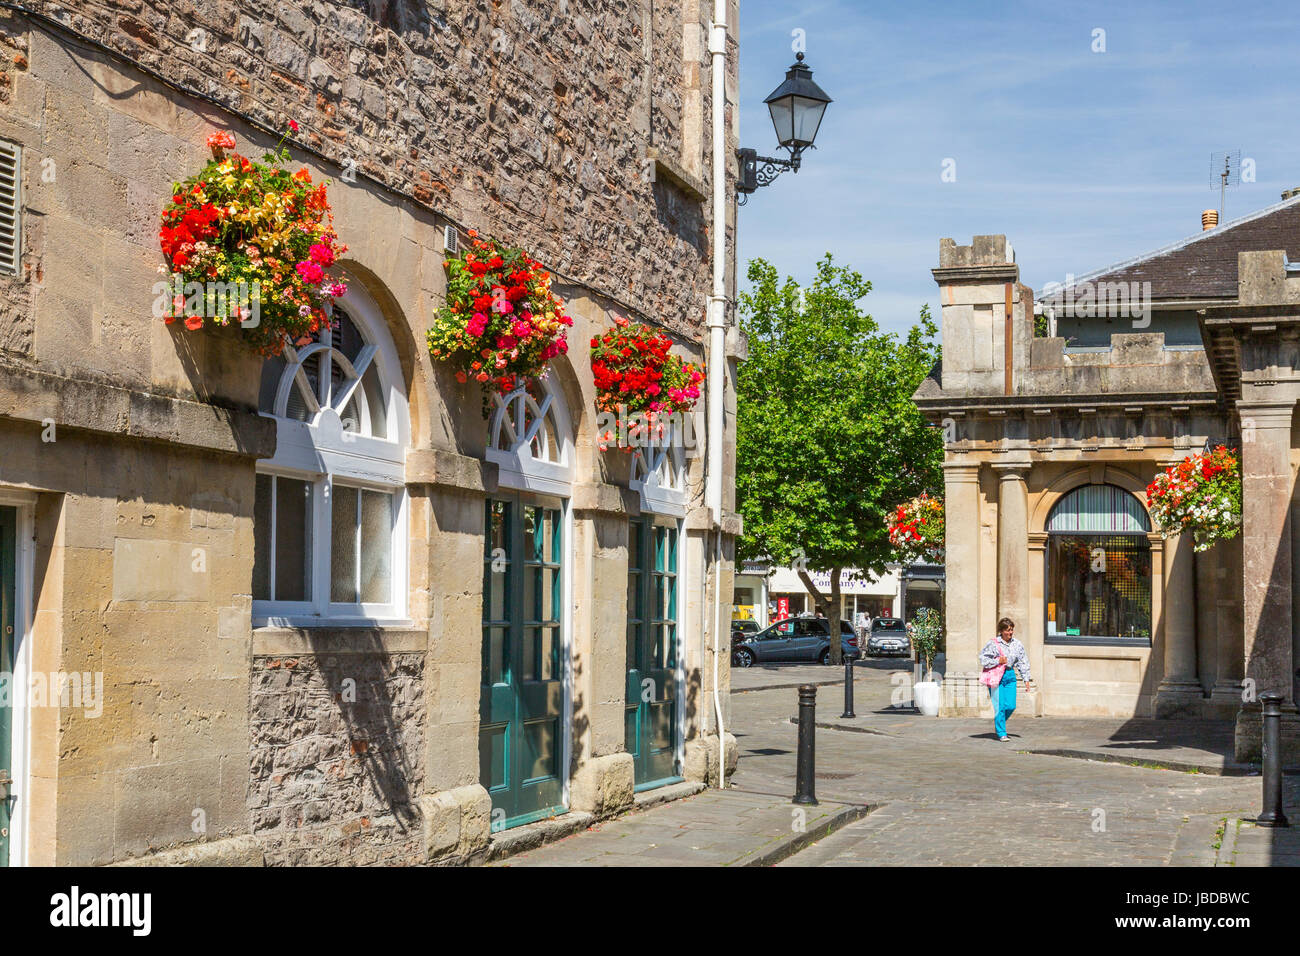 Das Rathaus in Brunnen auf dem gepflasterten Marktplatz steht und fällt im reizvoll Blumenschmuck im Sommer, Somerset, England, UK Stockfoto